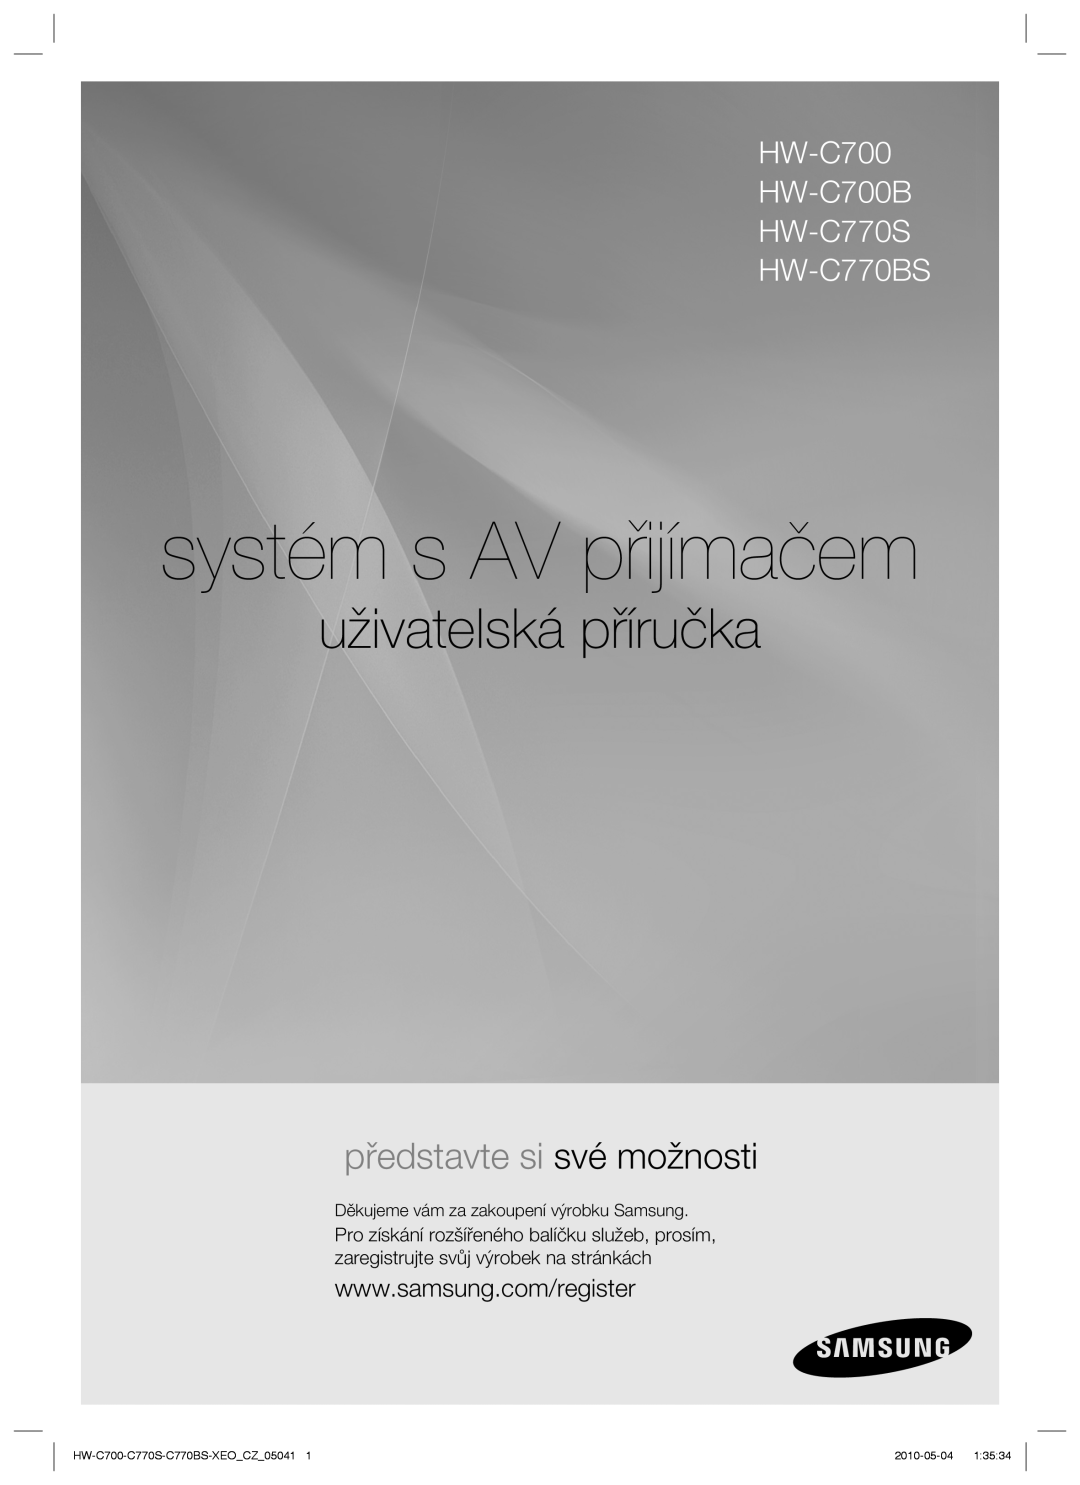 Samsung HW-C770S/EDC manual systém s AV přijímačem, uživatelská příručka, představte si své možnosti, 2010-05-04 